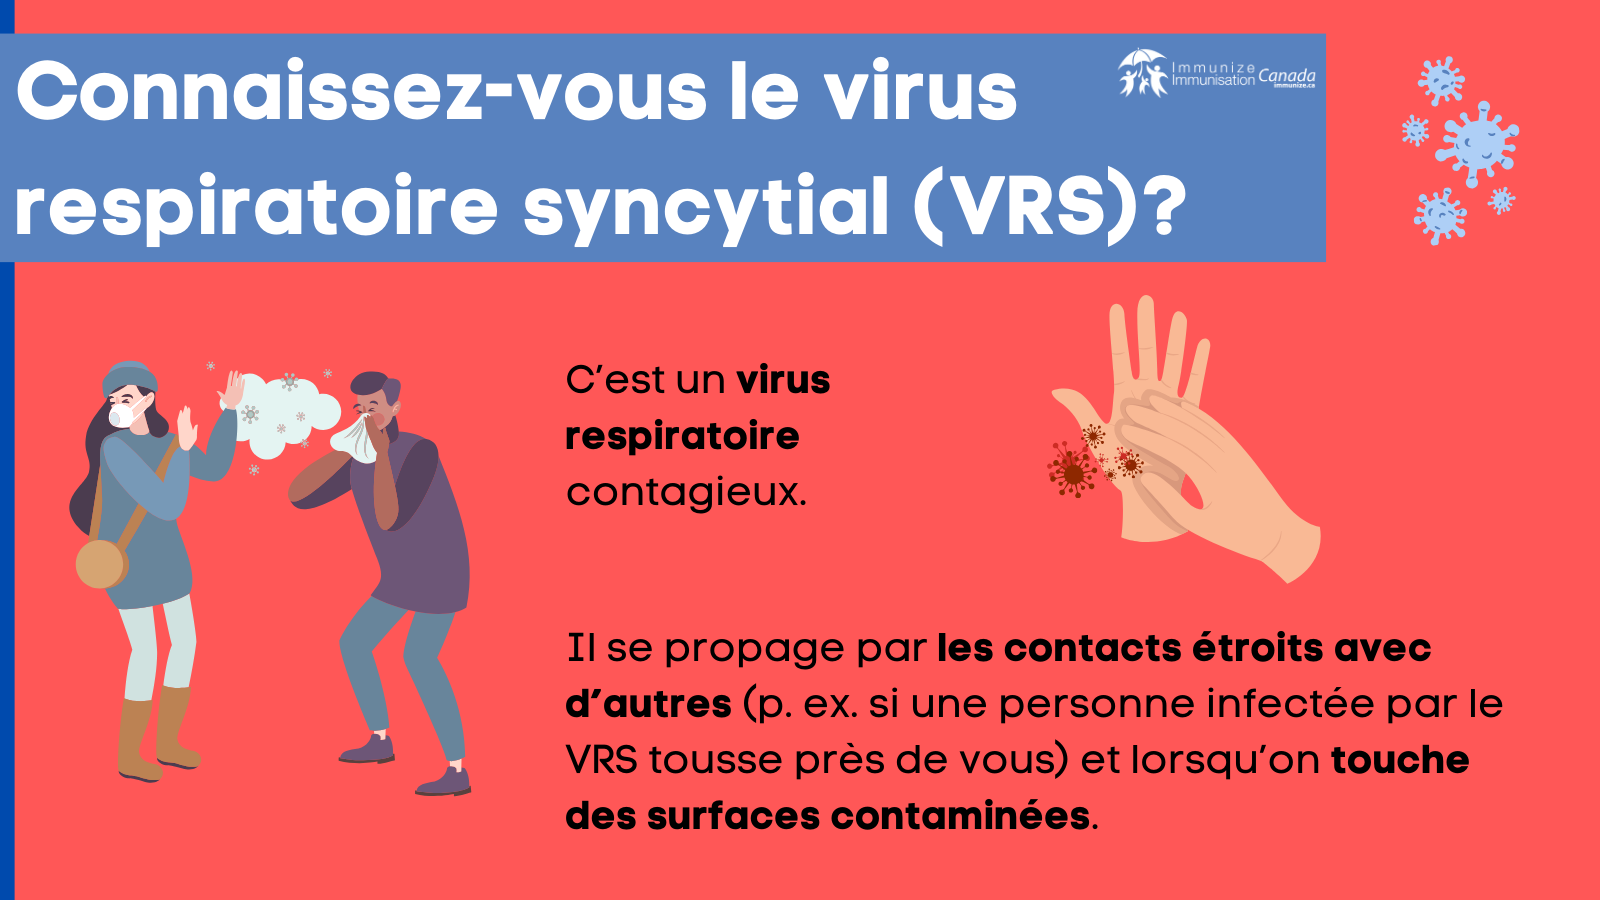 Connaissez-vous le virus respiratoire syncytial (VRS)? - image 2 pour Twitter